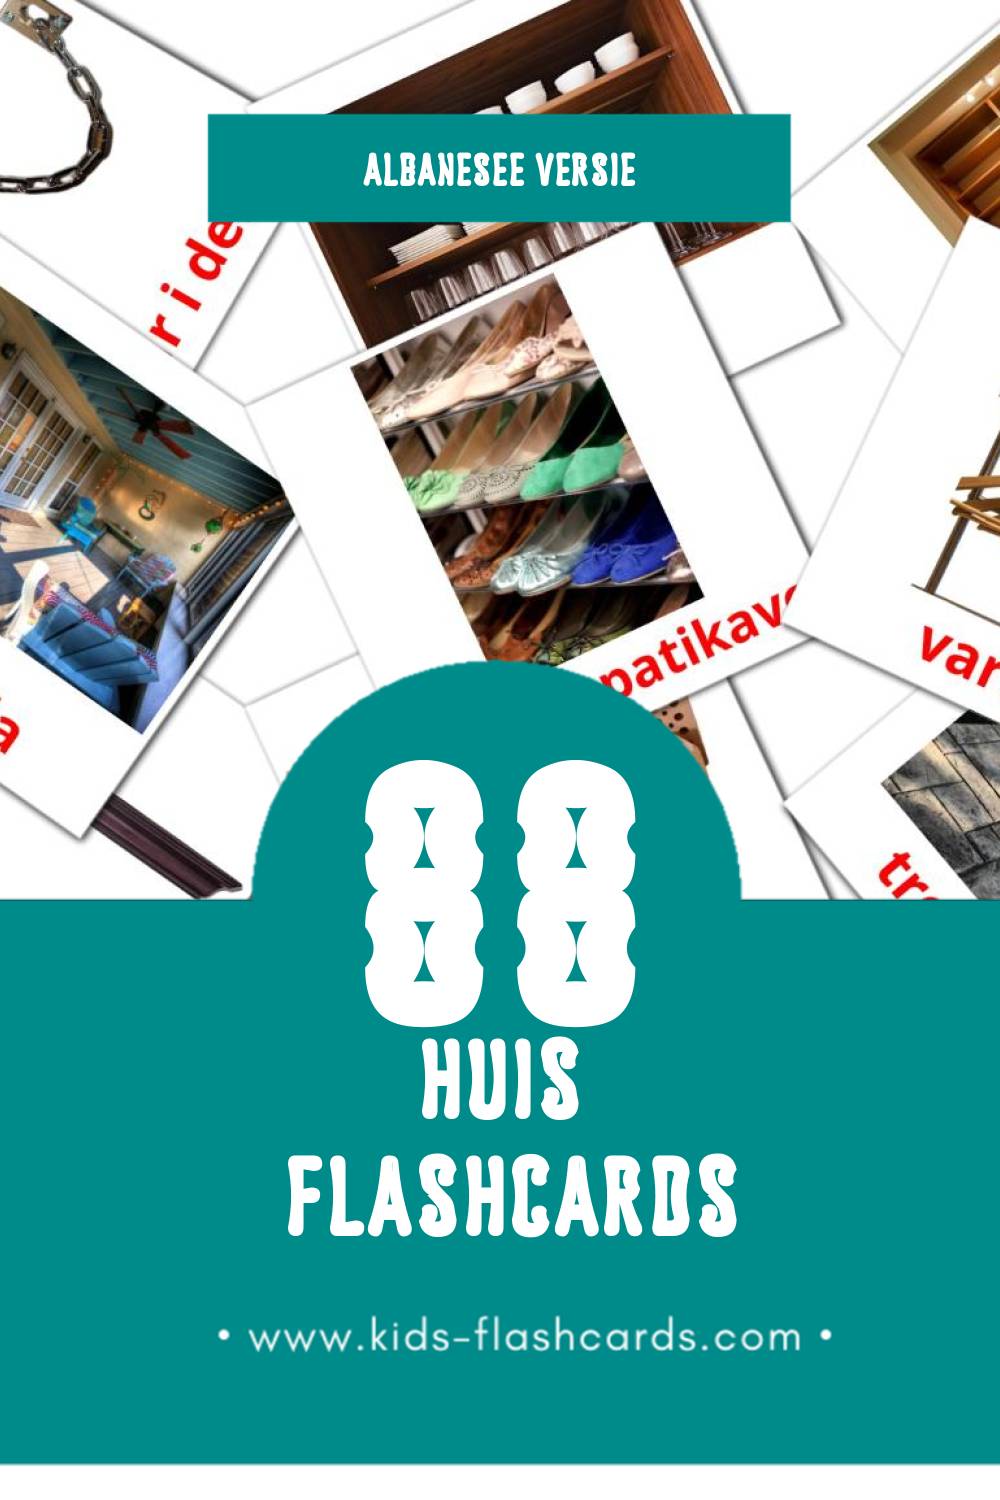 Visuele Shtëpia Flashcards voor Kleuters (88 kaarten in het Albanese)